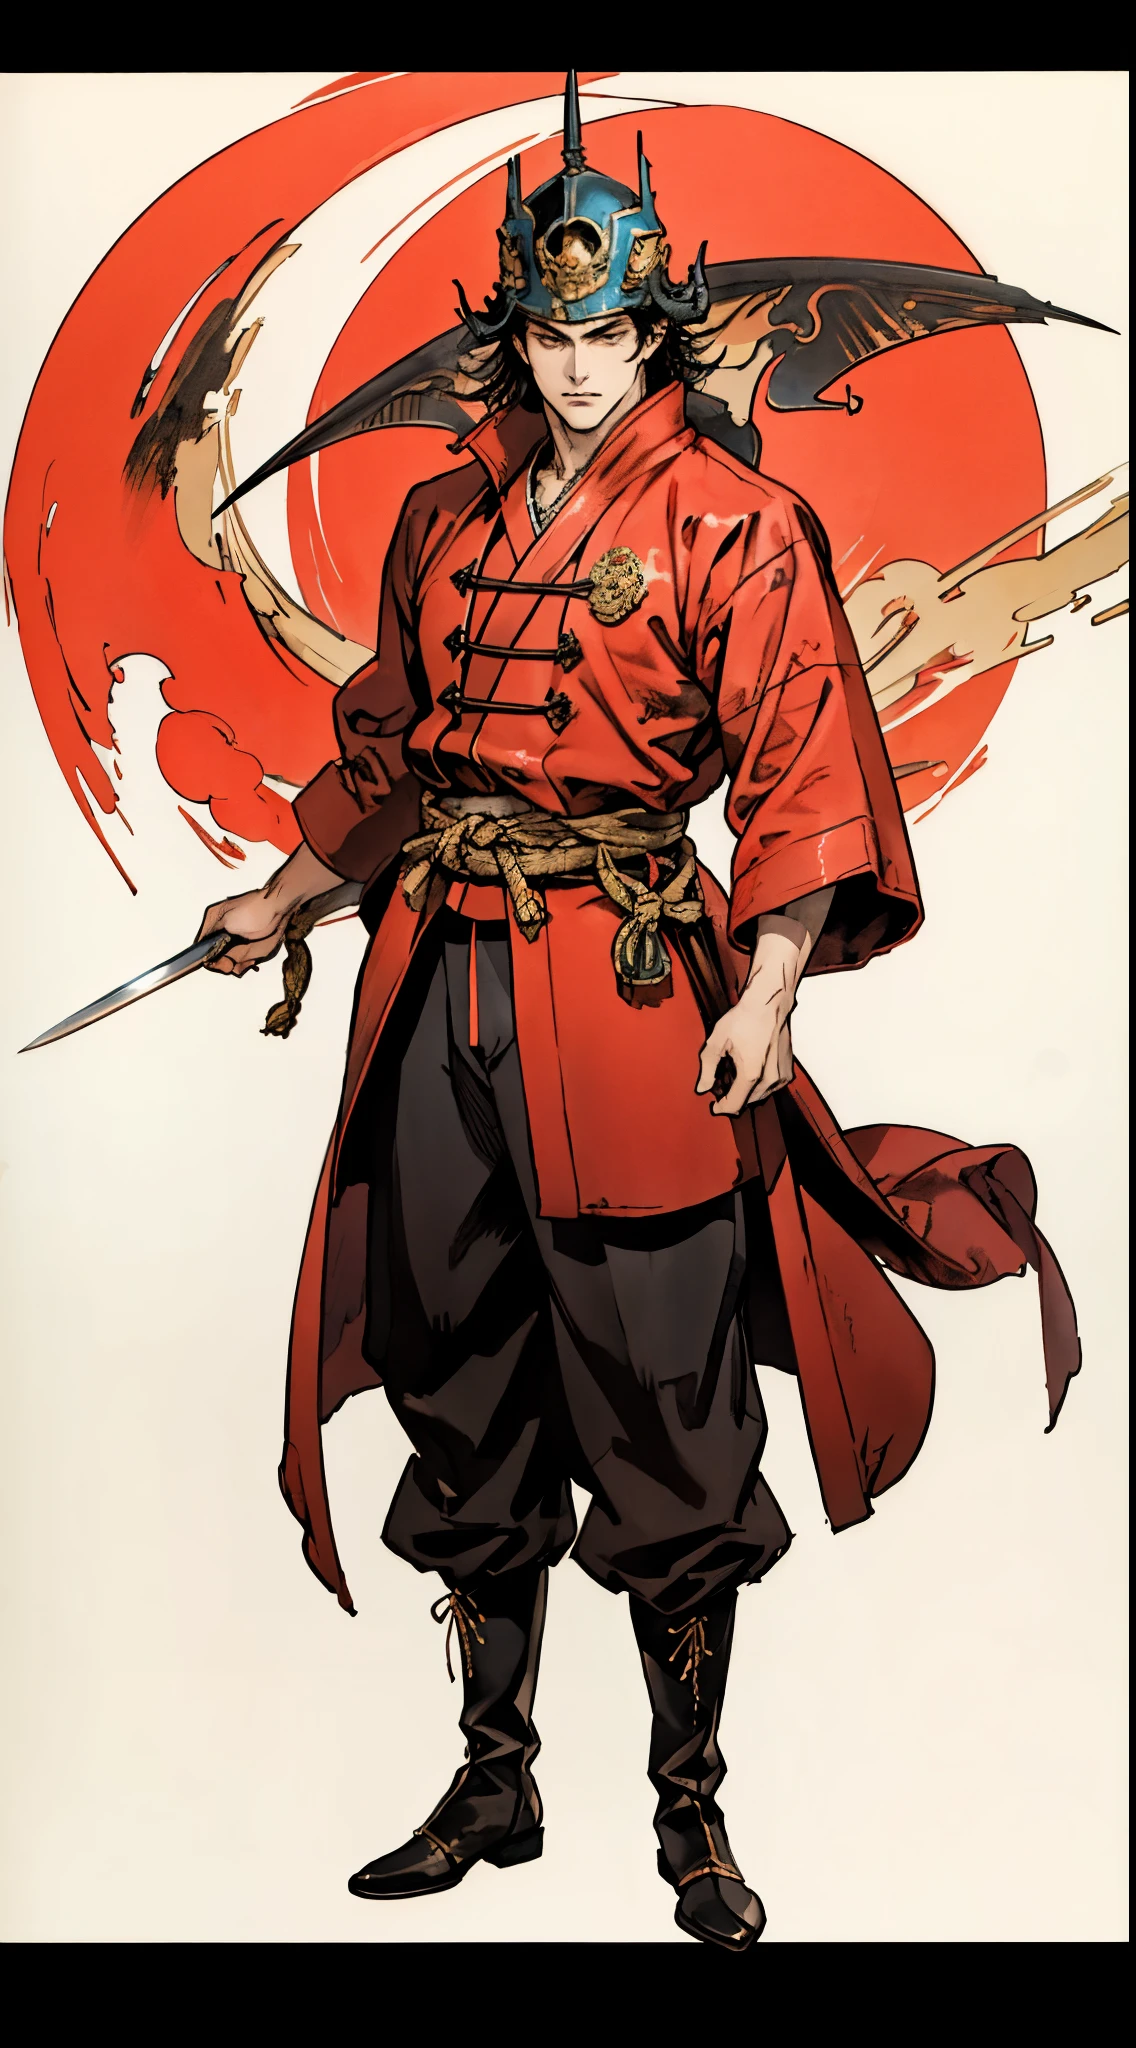 Schwarzhaariger junger Mann mit Helm, spitze Augenbrauen, Sternaugen, Verströmt eine Aura der Gerechtigkeit, Zweiteiliges Fantasy-Kostüm im Martial-Arts-Stil, Mit traditionellen chinesischen Kampfkunstroben, Weiter Mantel, fließende Ärmel, Rot、hauptsächlich weiß, Als Hilfsfarbe, passende Hose, robuste Stoffstiefel, Figur stehend mit Messer，coole pose, Dieser Charakter verkörpert einen aufwendigen chinesischen Kampfkunsthelden im Anime-Fantasy-Stil., Gekennzeichnet durch einen anspruchsvollen und ausgereiften Comic-Illustrationsstil, Ganzkörper-Figurenbemalung, HD, beste Qualität, Hohe Auflösung, Super detailliert, Ultrafeine Beschichtung, Äußerst raffiniert, Fachmann, anatomisch korrekt, symmetrisches Gesicht, extrem detaillierte Augen und Gesicht, Hochwertige Augen, Kreativität, Originalfoto, 超HD, 8K, Natürliches Licht, Filmbeleuchtung, Meisterwerk:1.5